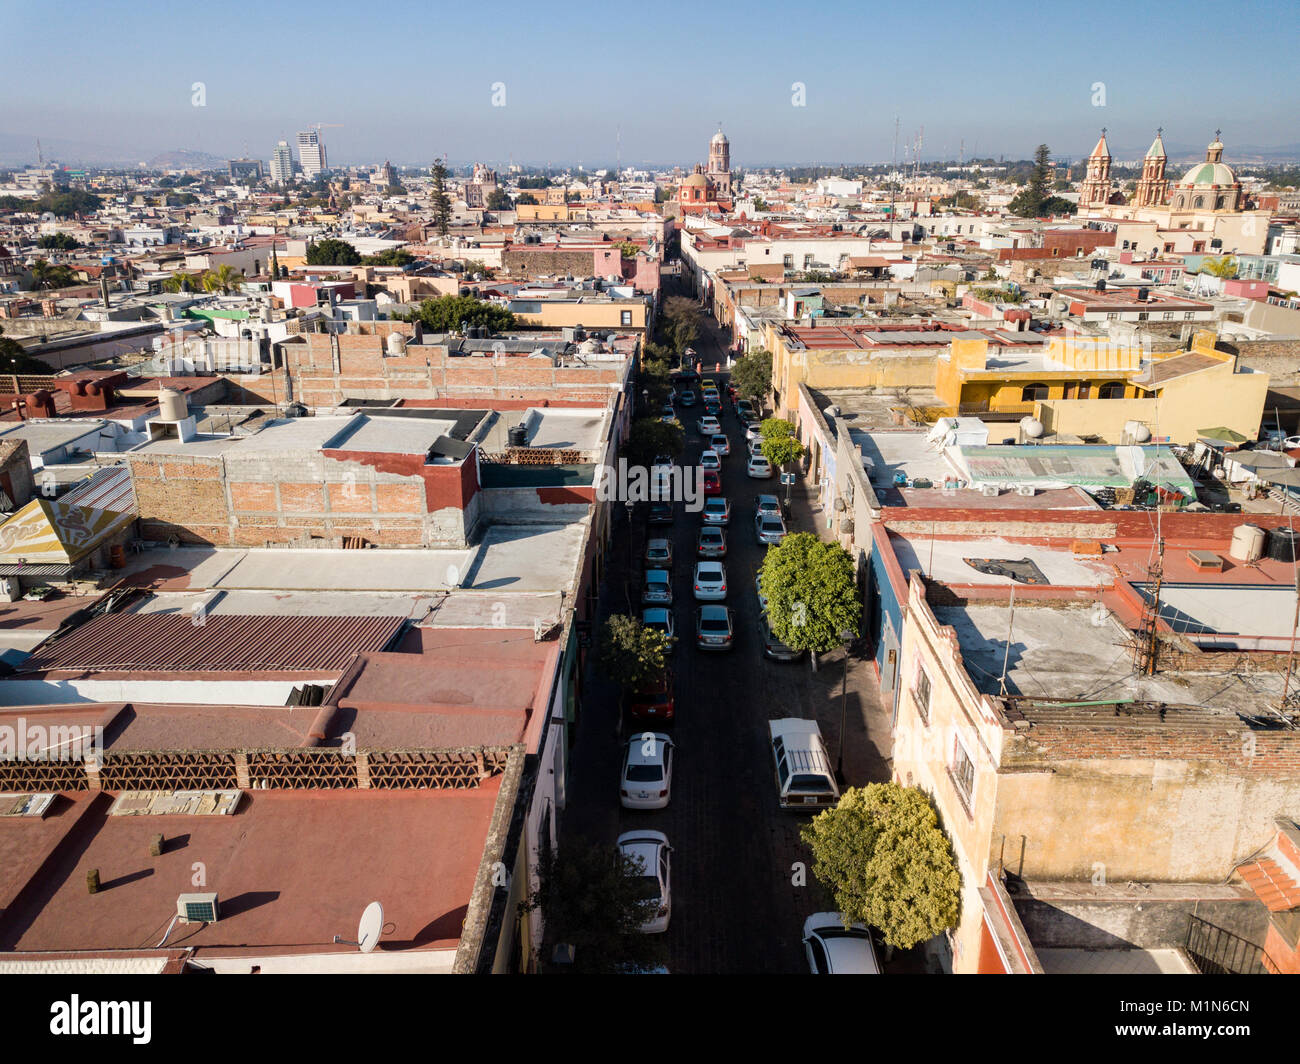 Aerial of old town, Santiago de Querétaro, Qro Stock Photo